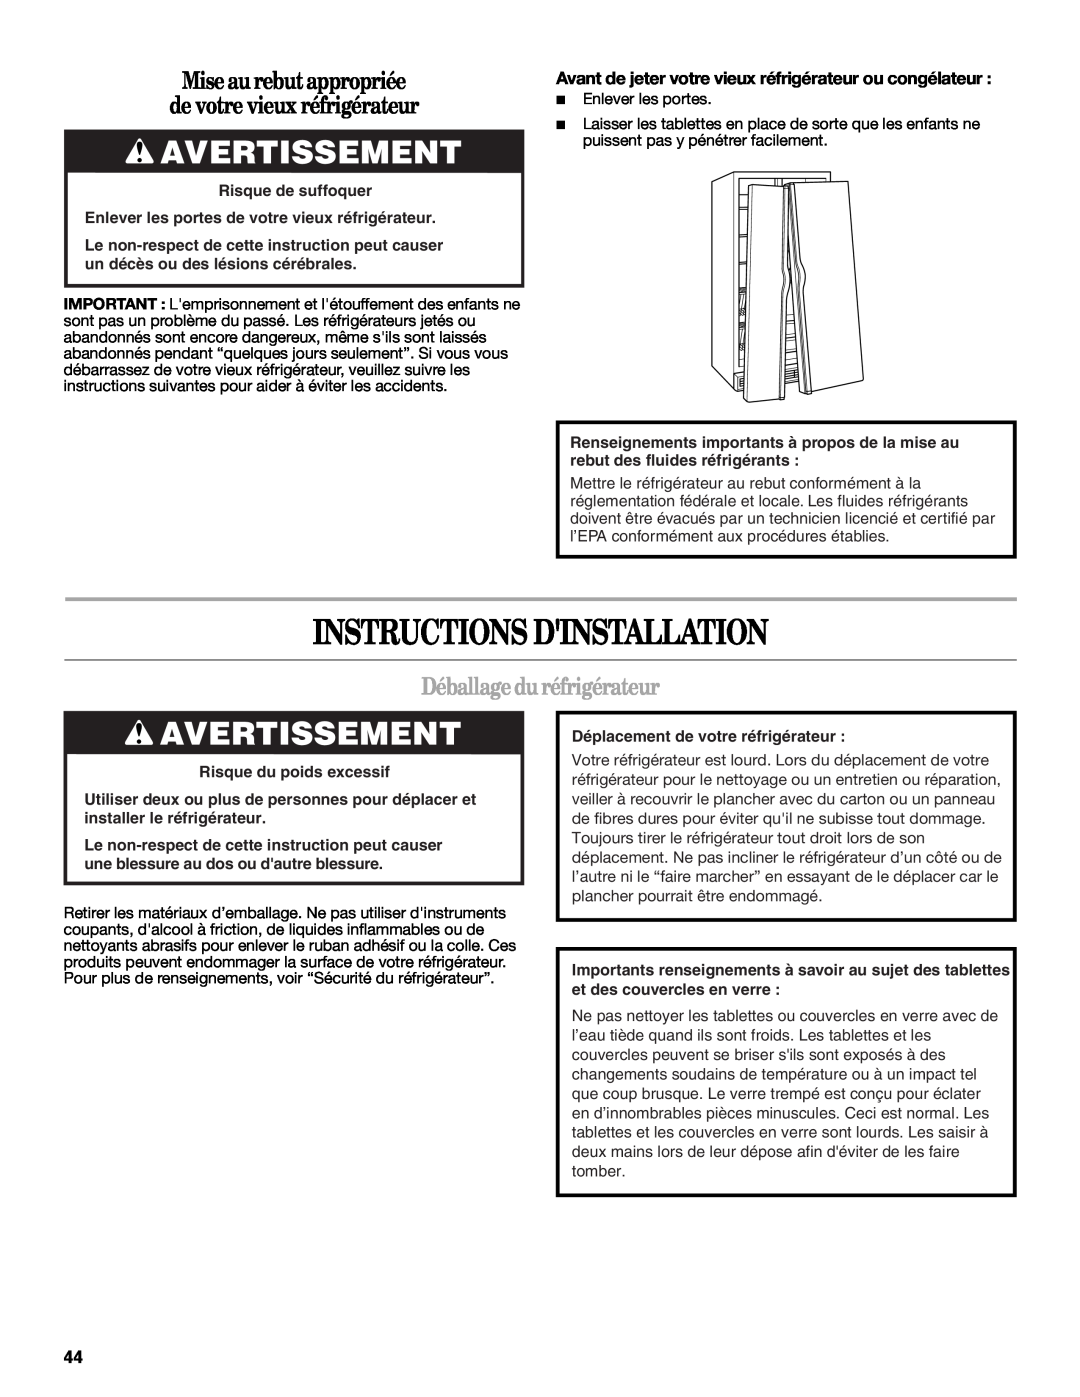 Whirlpool WSF26C2EXB Instructions Dinstallation, Avertissement, Mise aurebut appropriée de votre vieux réfrigérateur 